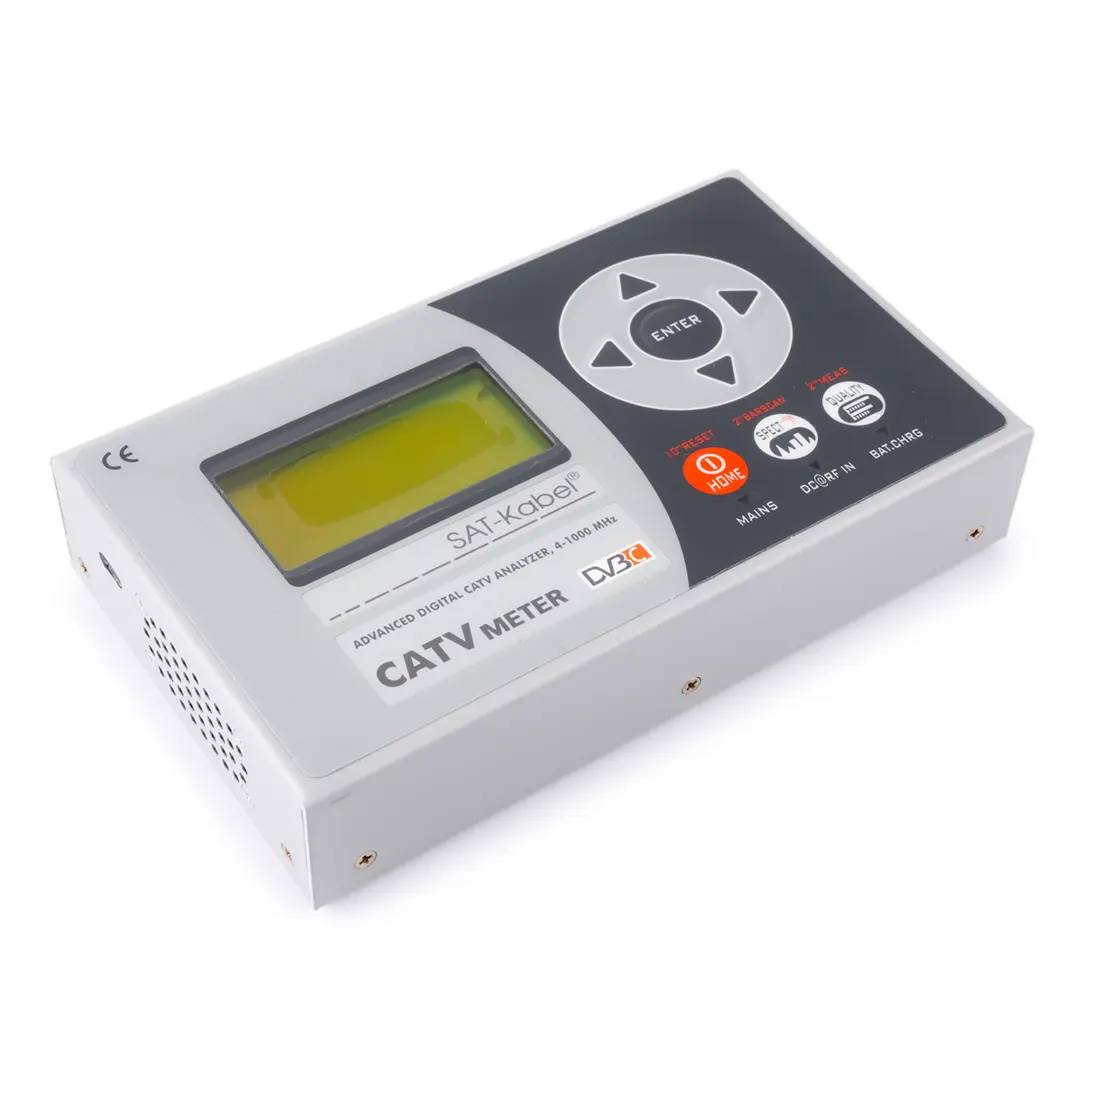 Miernik CATVmeter QAM Expert DVB-C 4-1000MHz - wada wyświetlacza